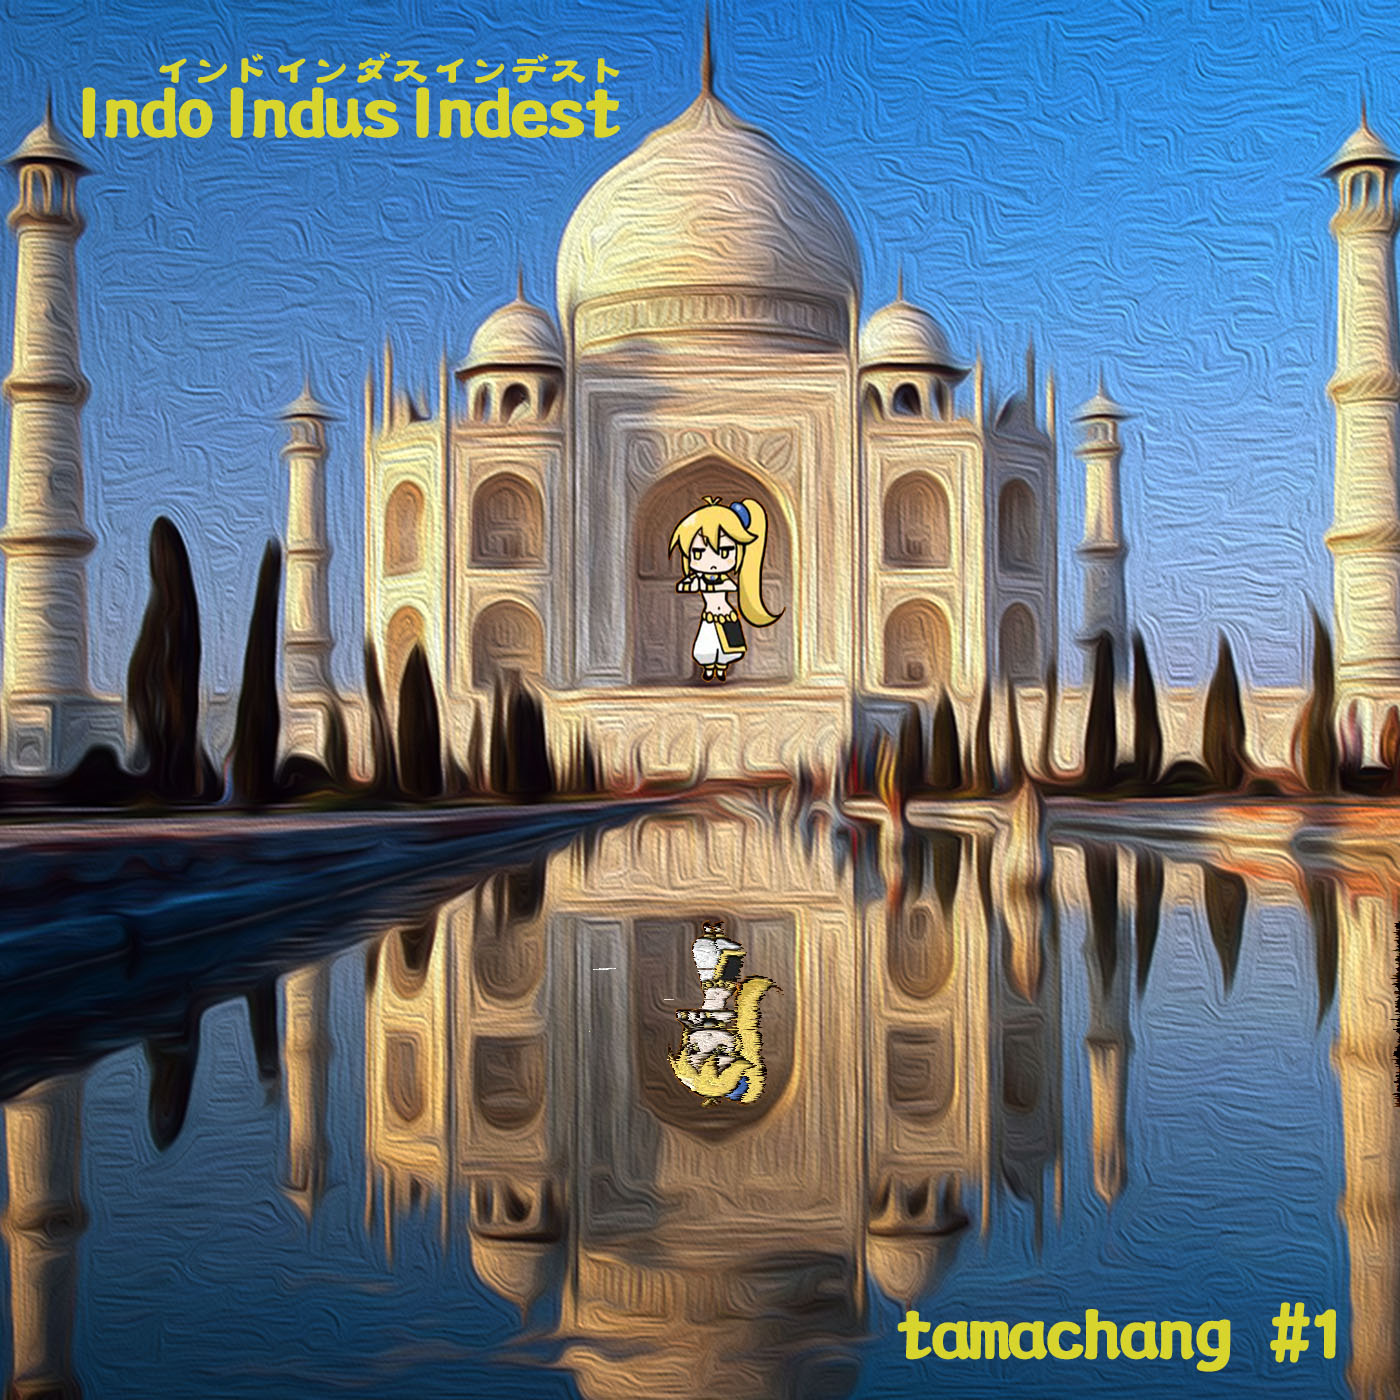 Indo Indus Indest